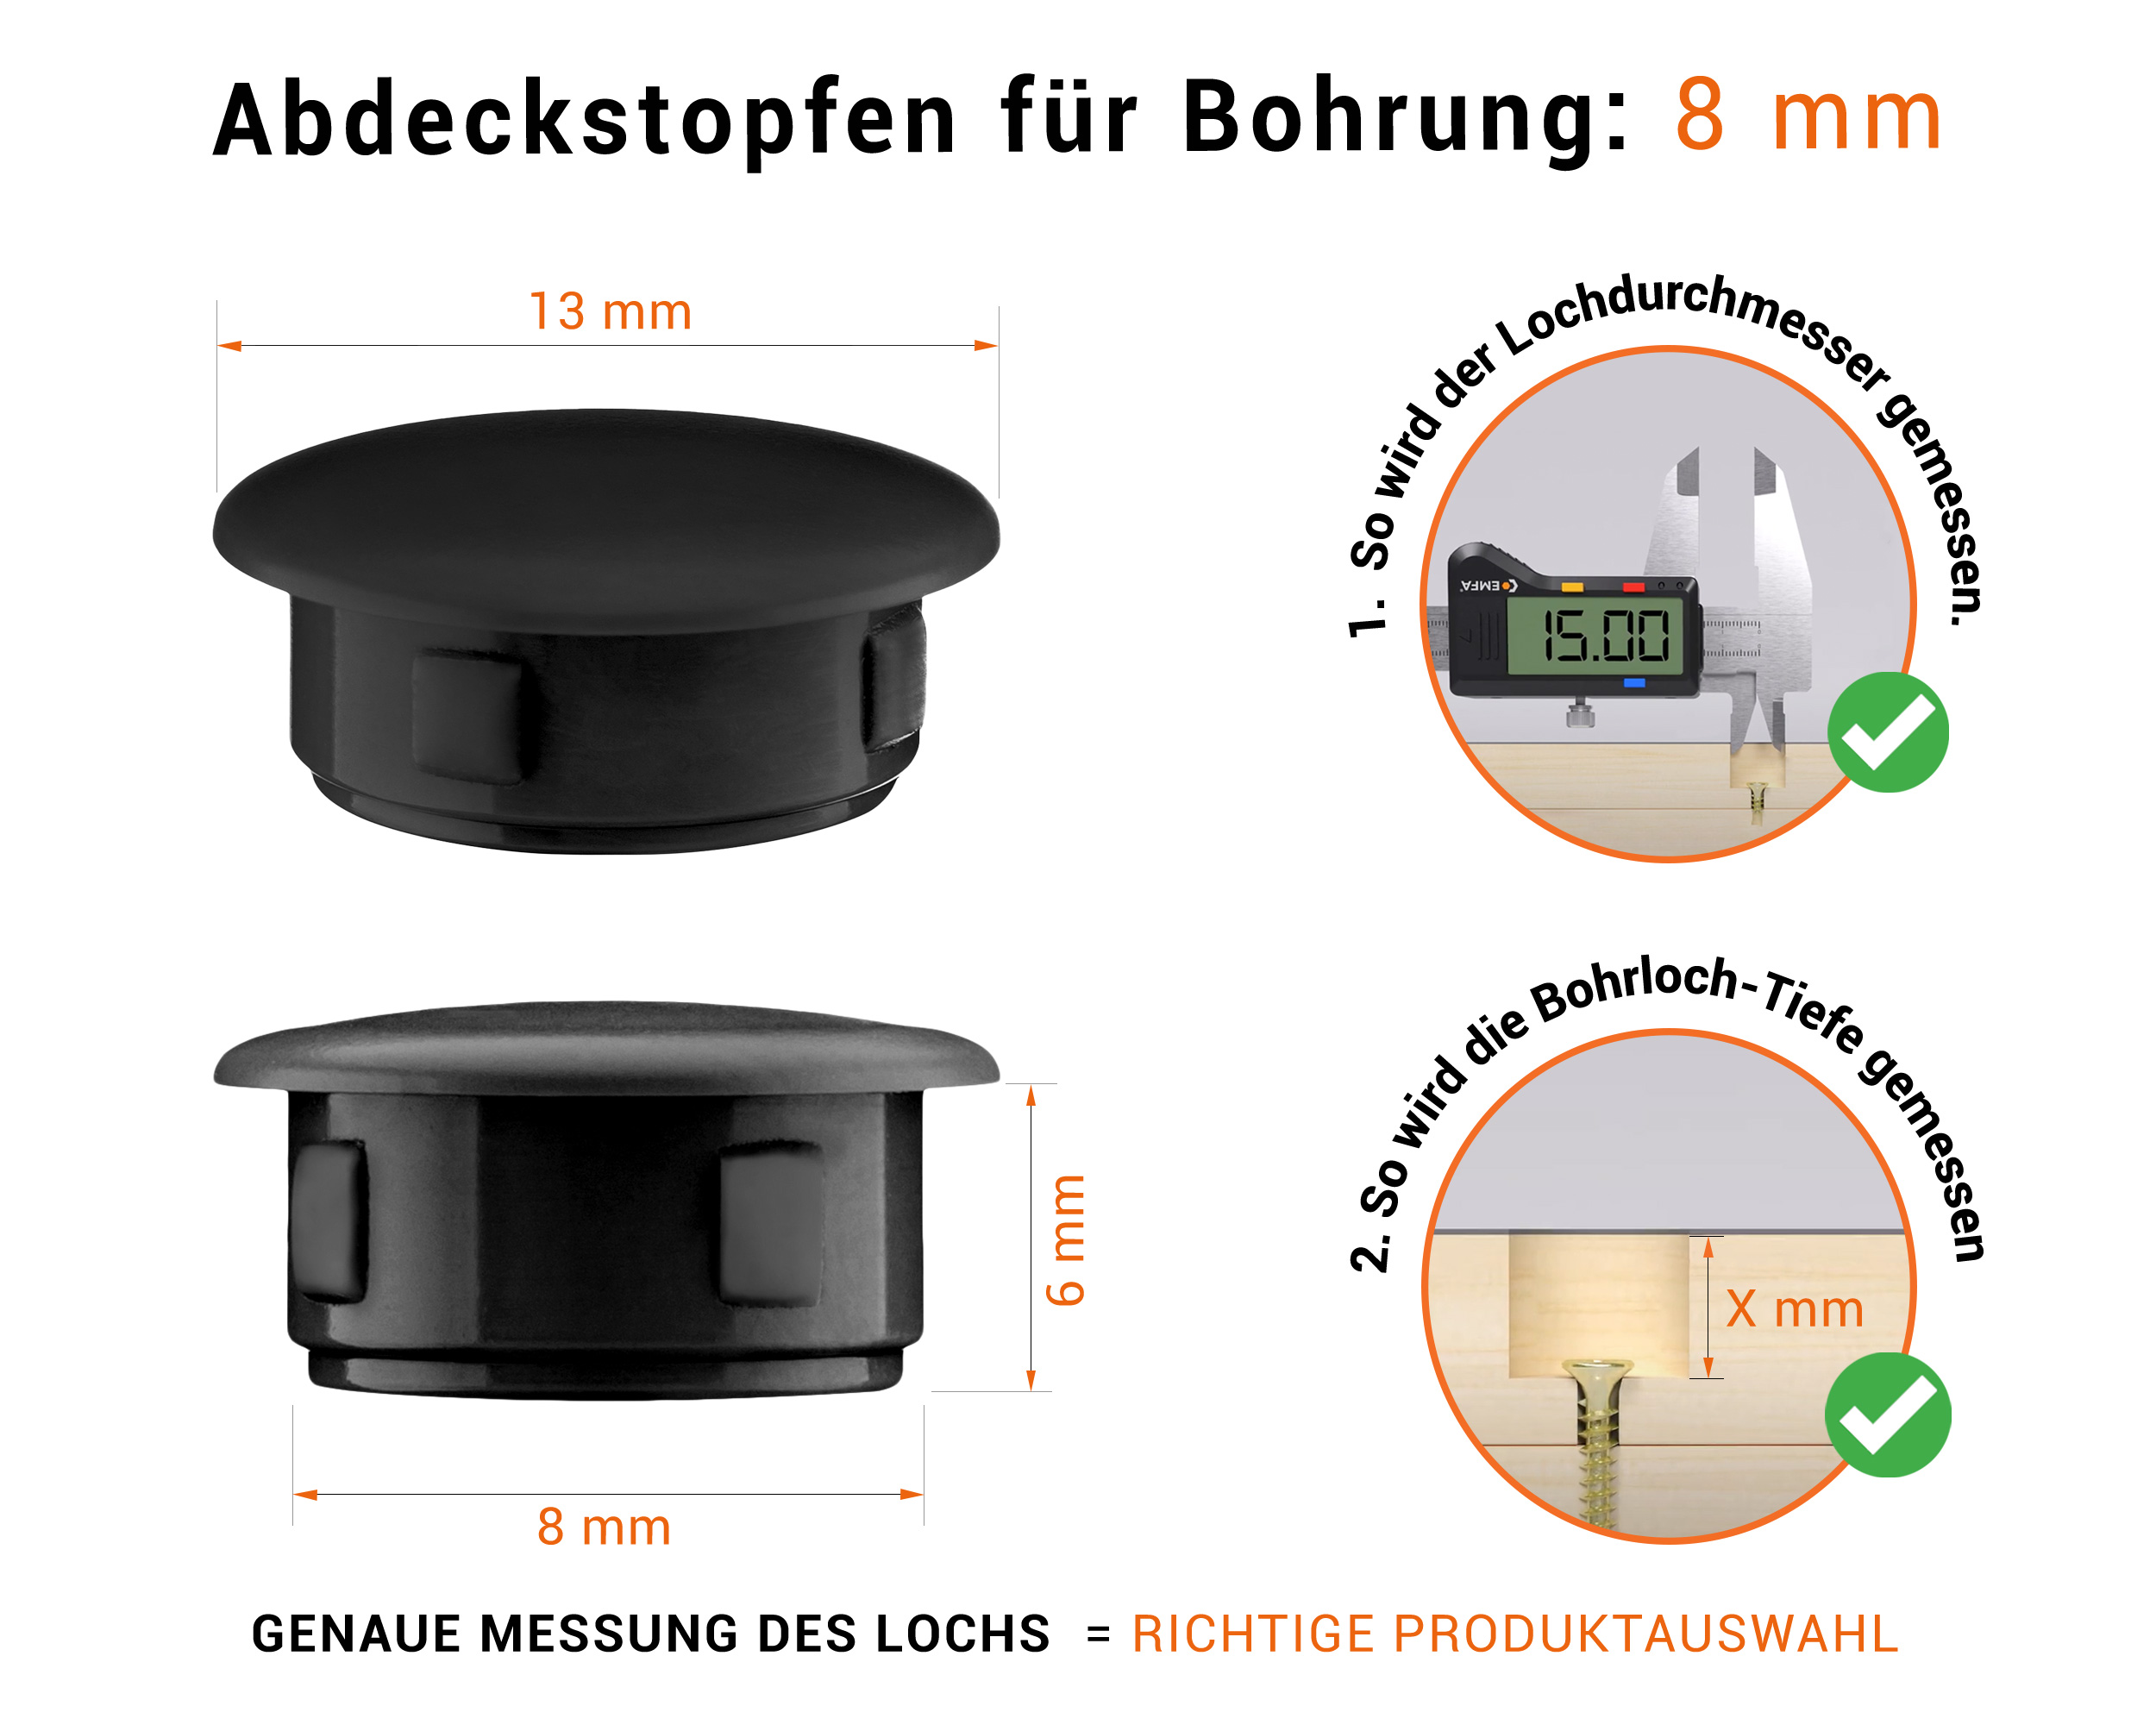 Schwarze Blindstopfen aus Kunststoff für Bohrung 8 mm mm mit technischen Abmessungen und Anleitung für korrekte Messung